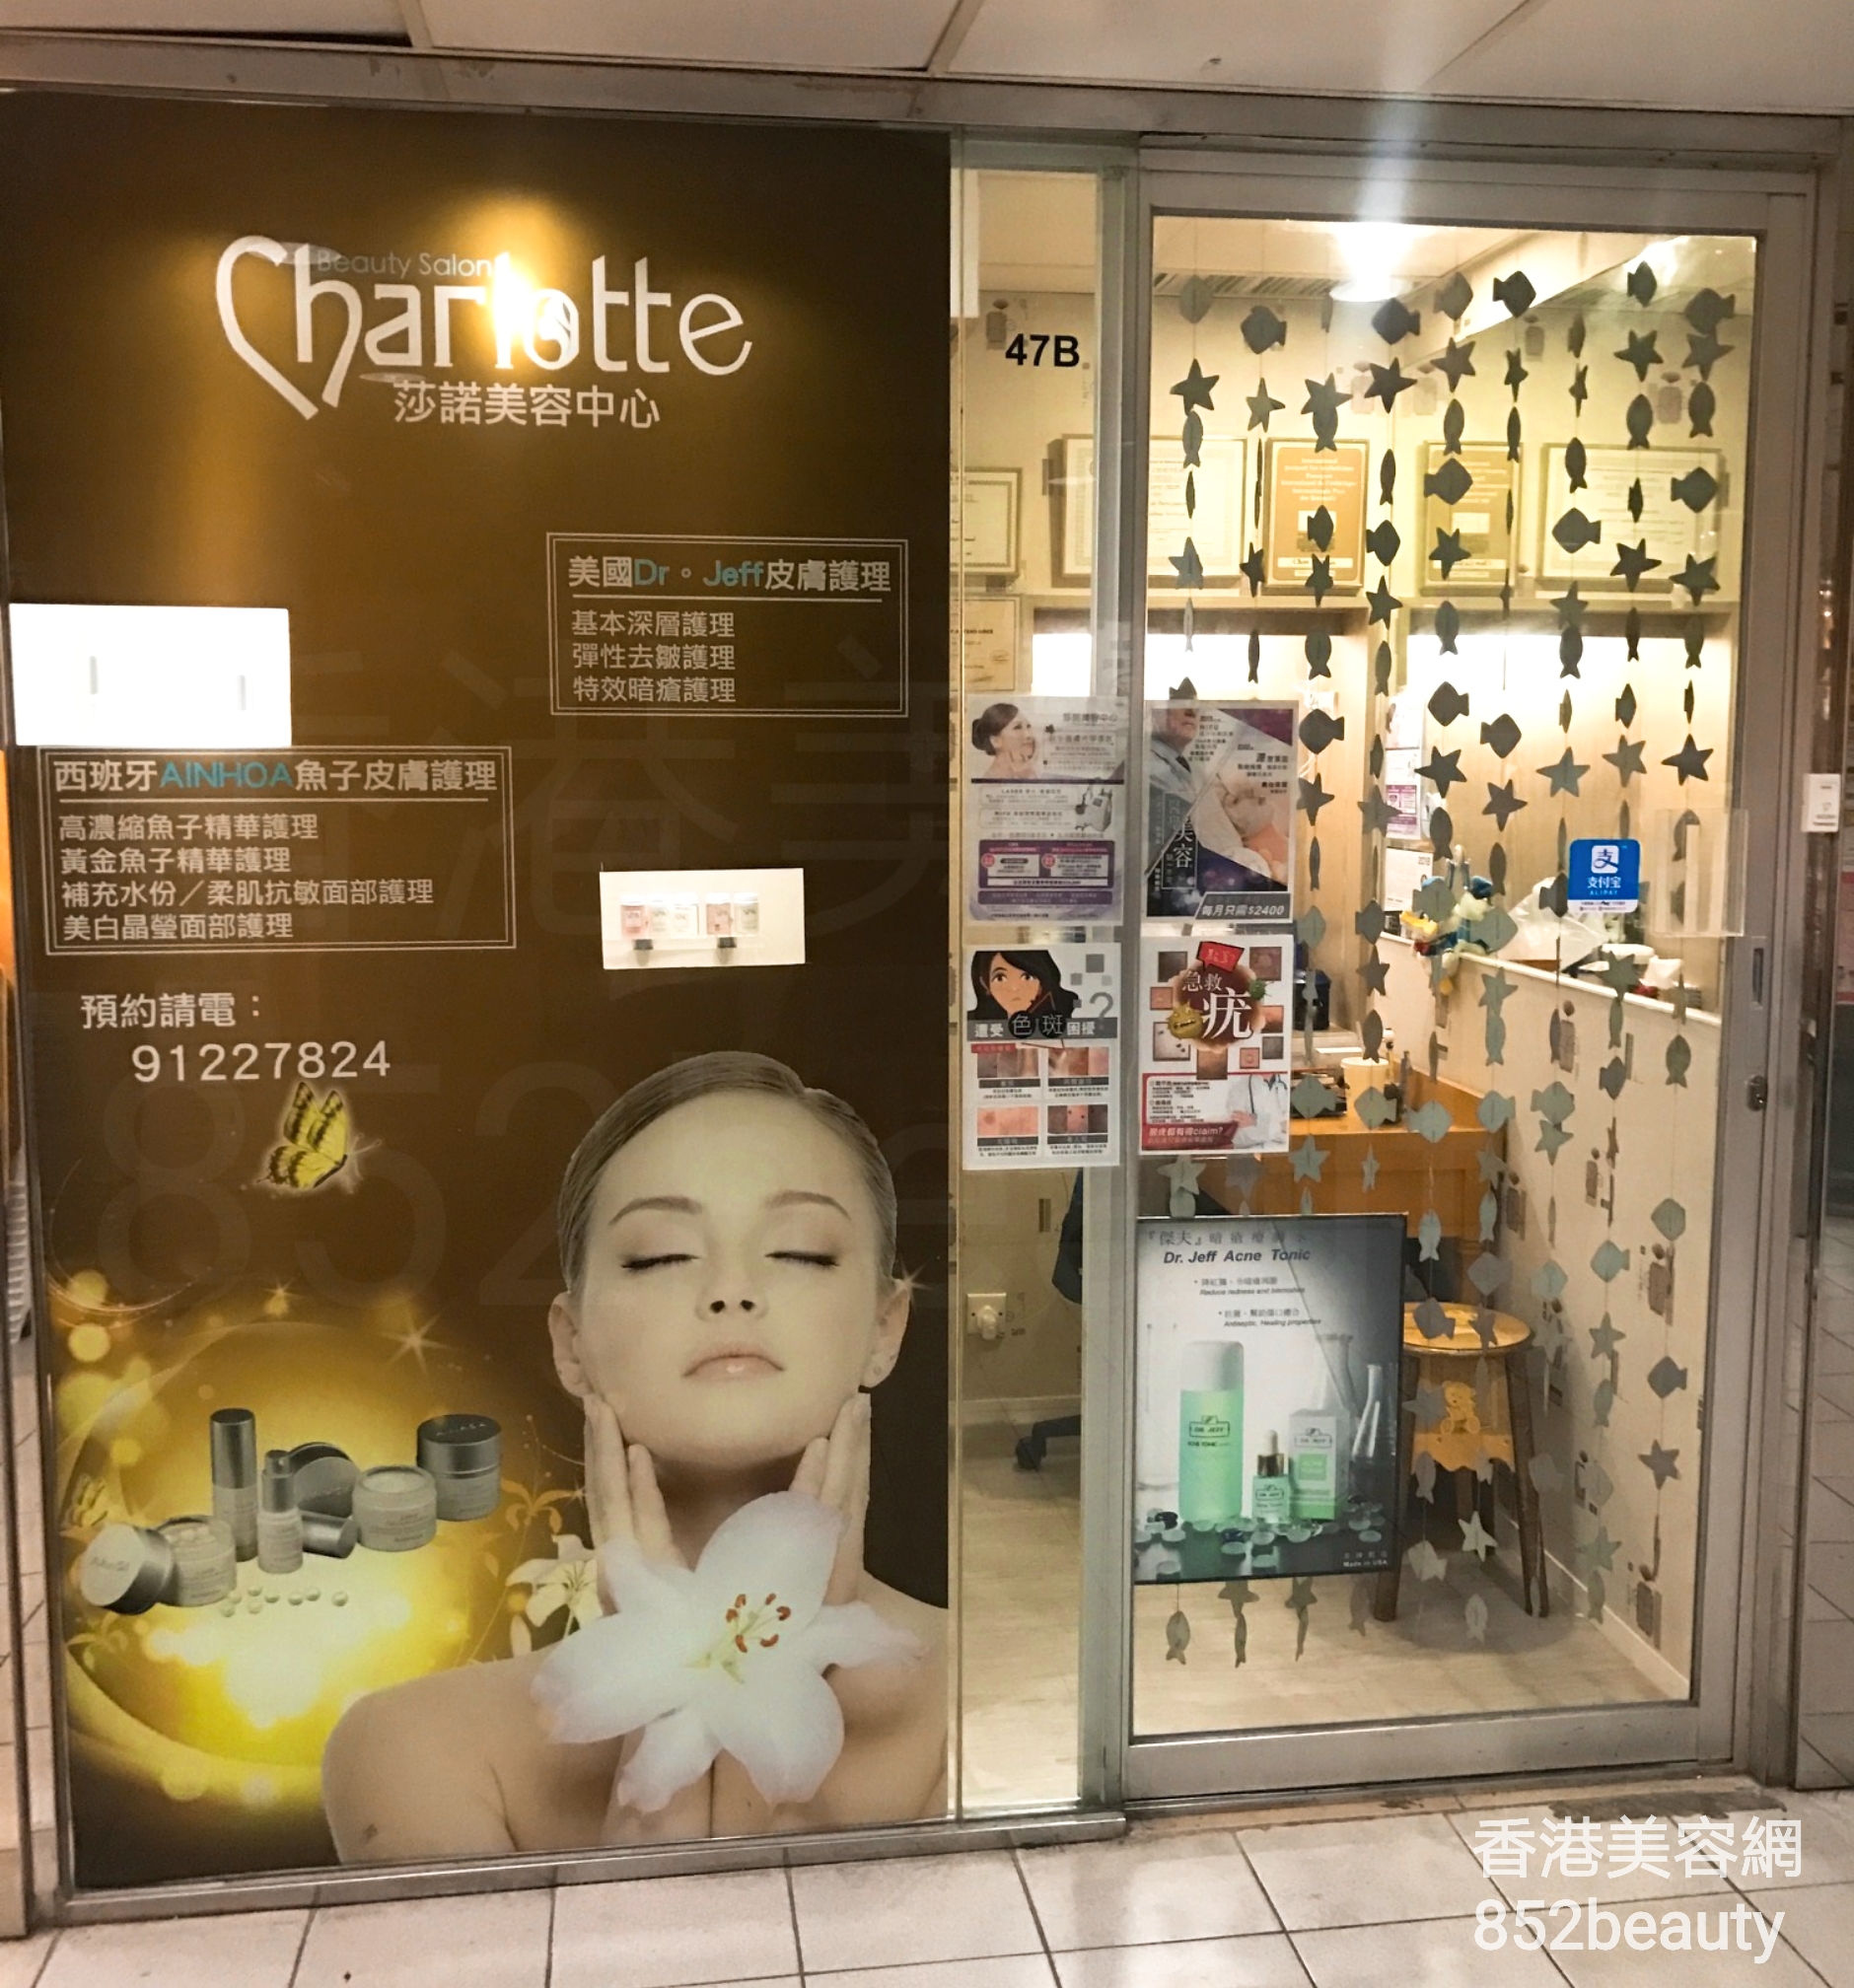 手脚护理: 莎諾美容中心 Charlotte Beauty Salon